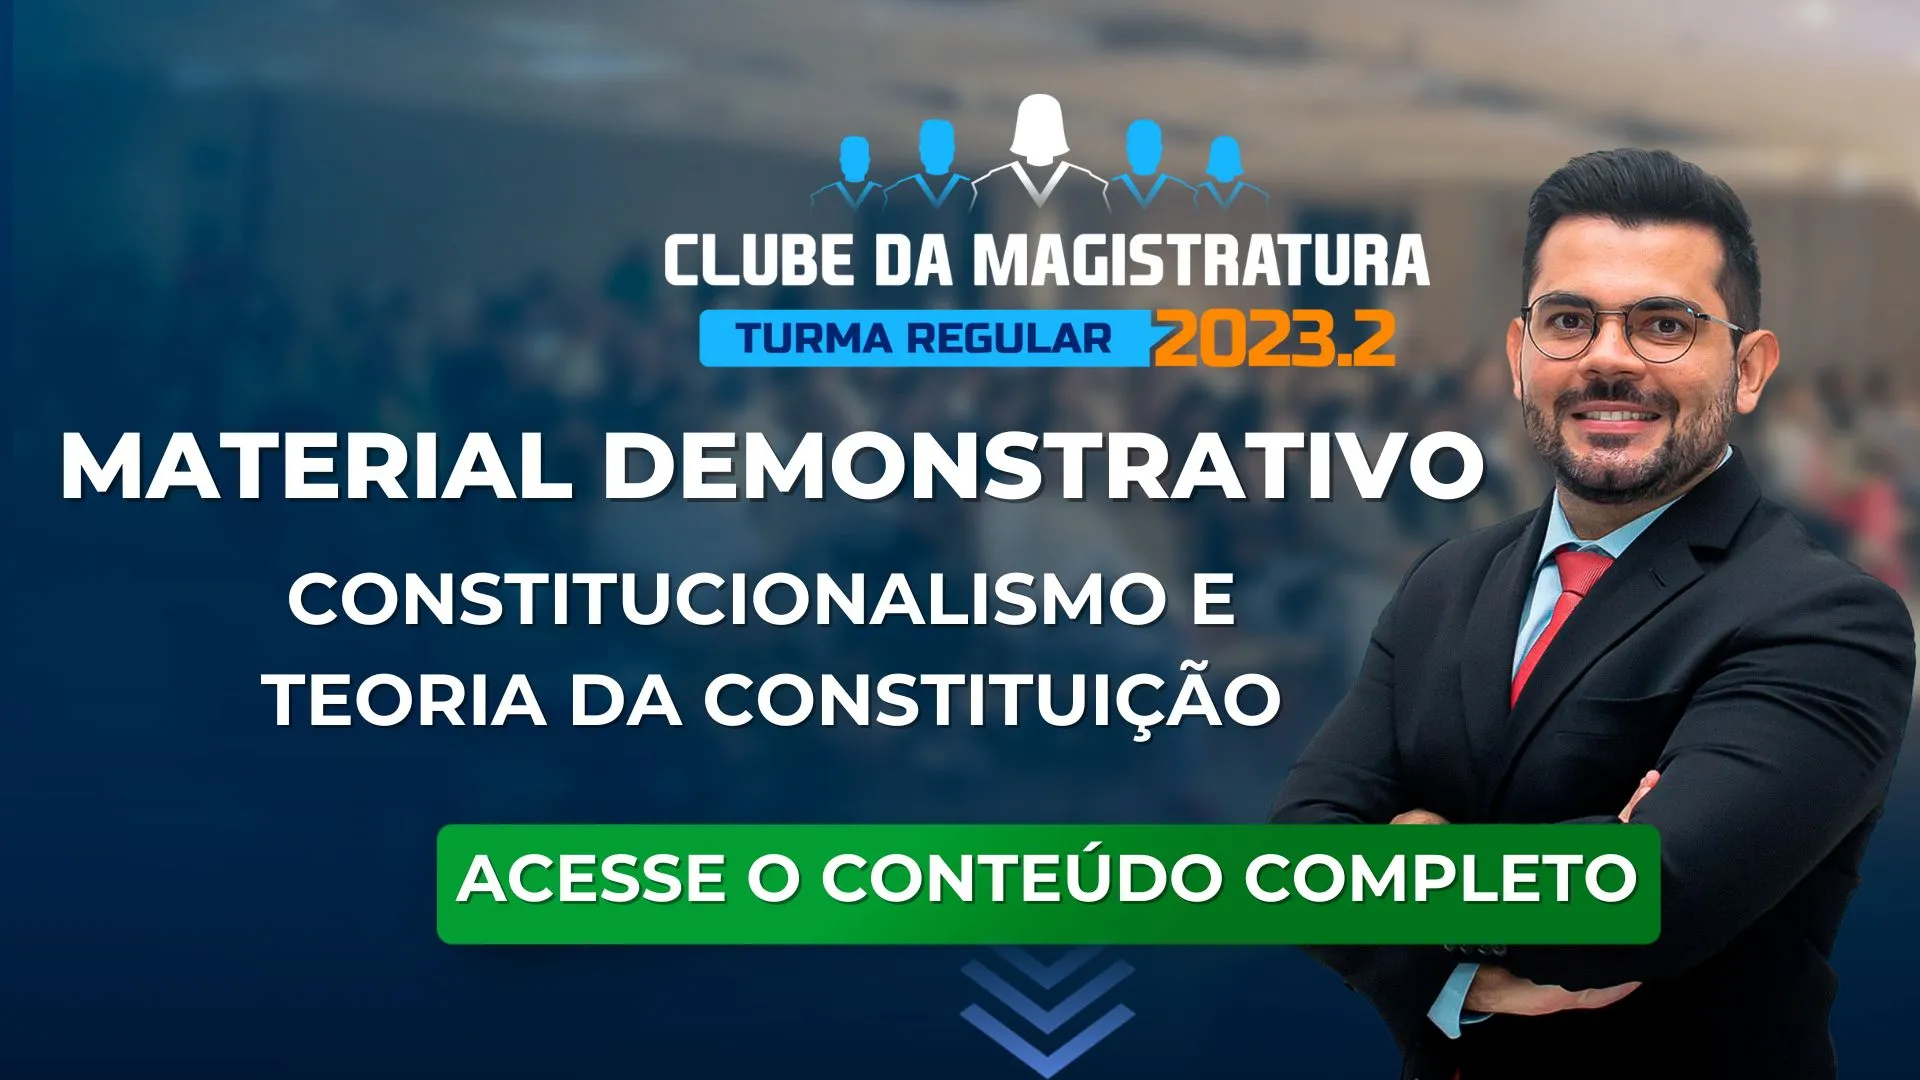 Clube da Magistratura 2023.2: baixe o material demonstrativo de Constitucional